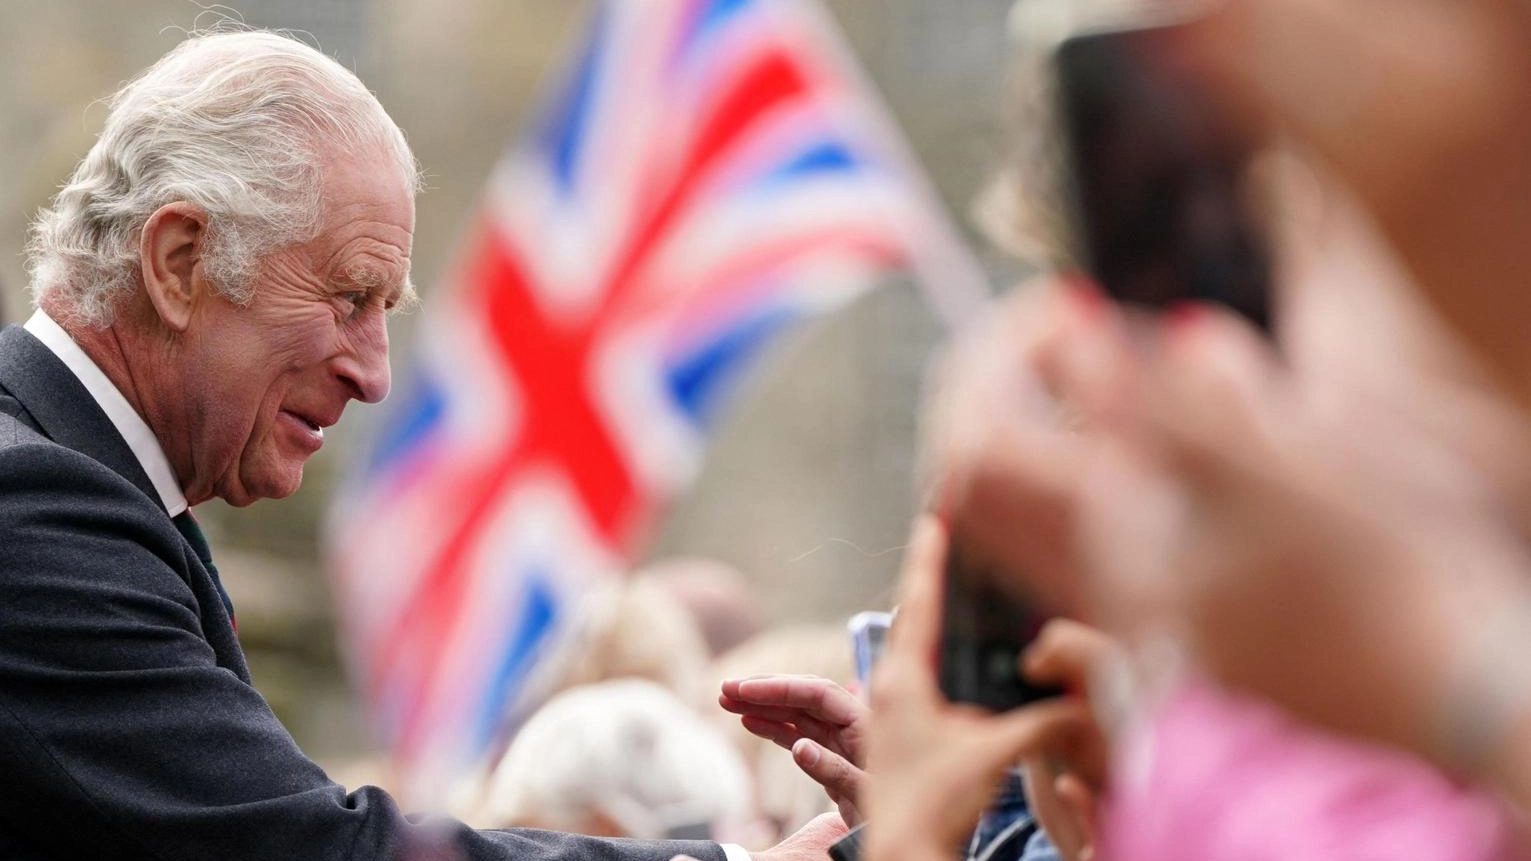 Re Carlo III, 75 anni, tornerà presto ai suoi impegni pubblici dopo mesi di cure per un cancro, con i medici soddisfatti dei suoi progressi. Buckingham Palace smentisce voci su un peggioramento delle condizioni del sovrano.